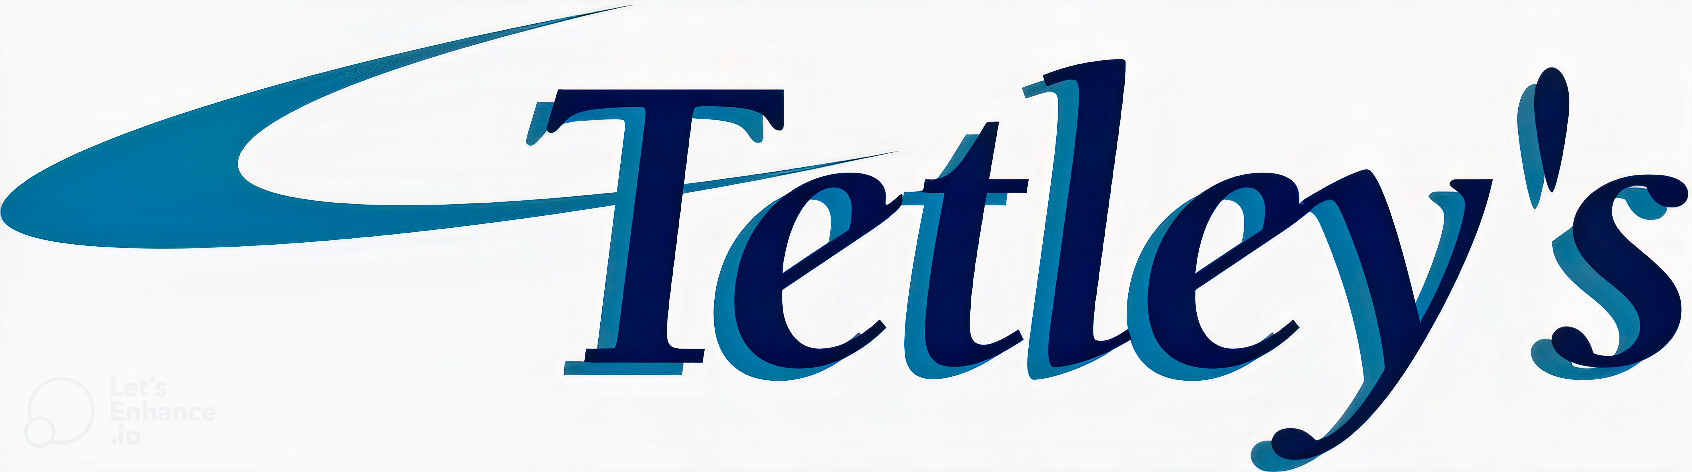 logo for Tetley's Coaches